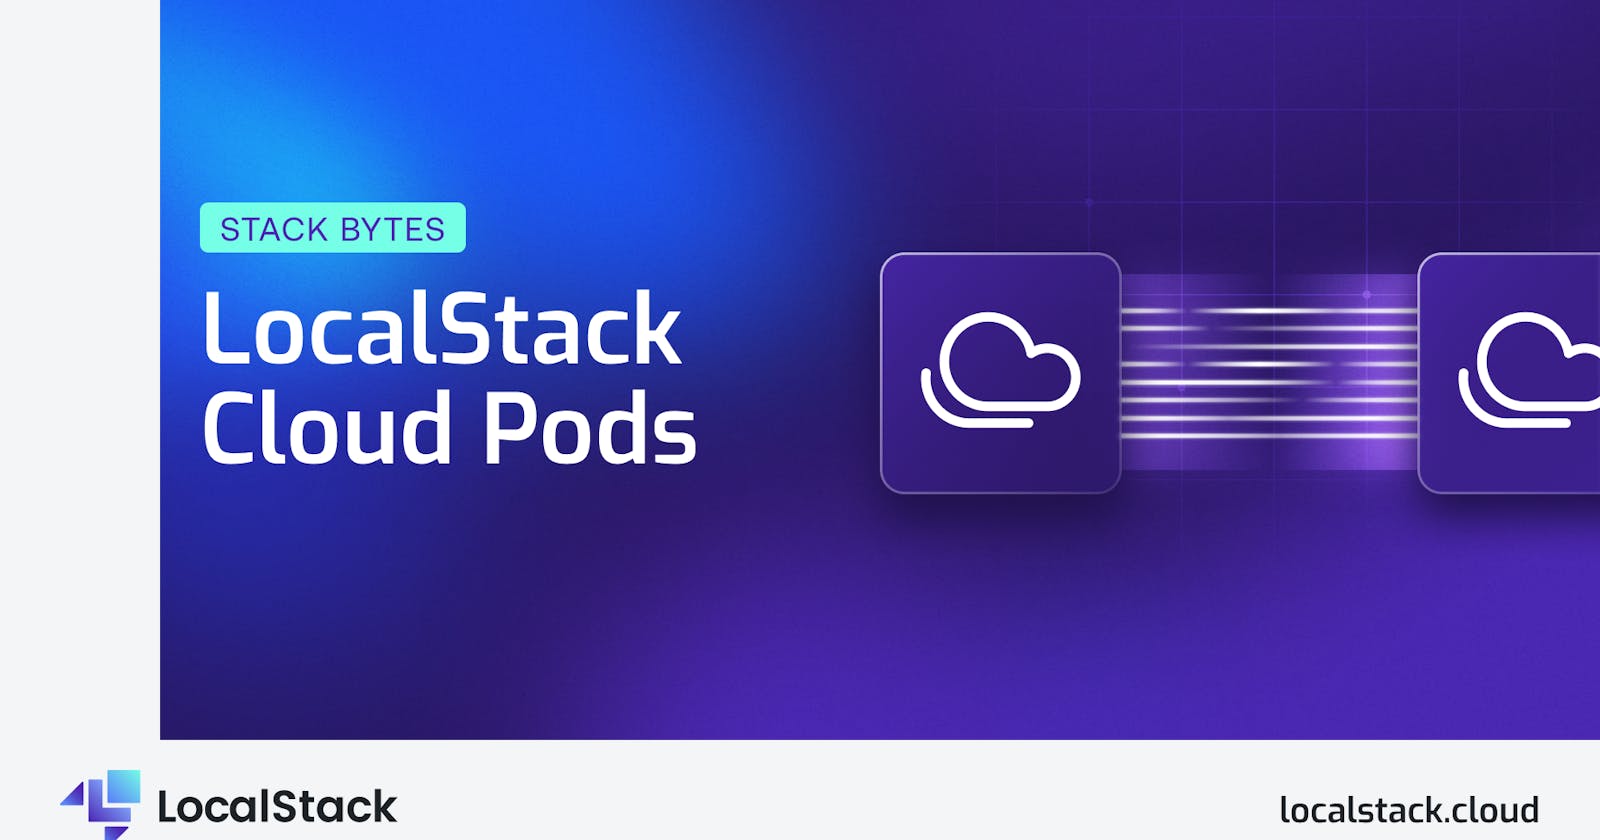 LocalStack Cloud Pods